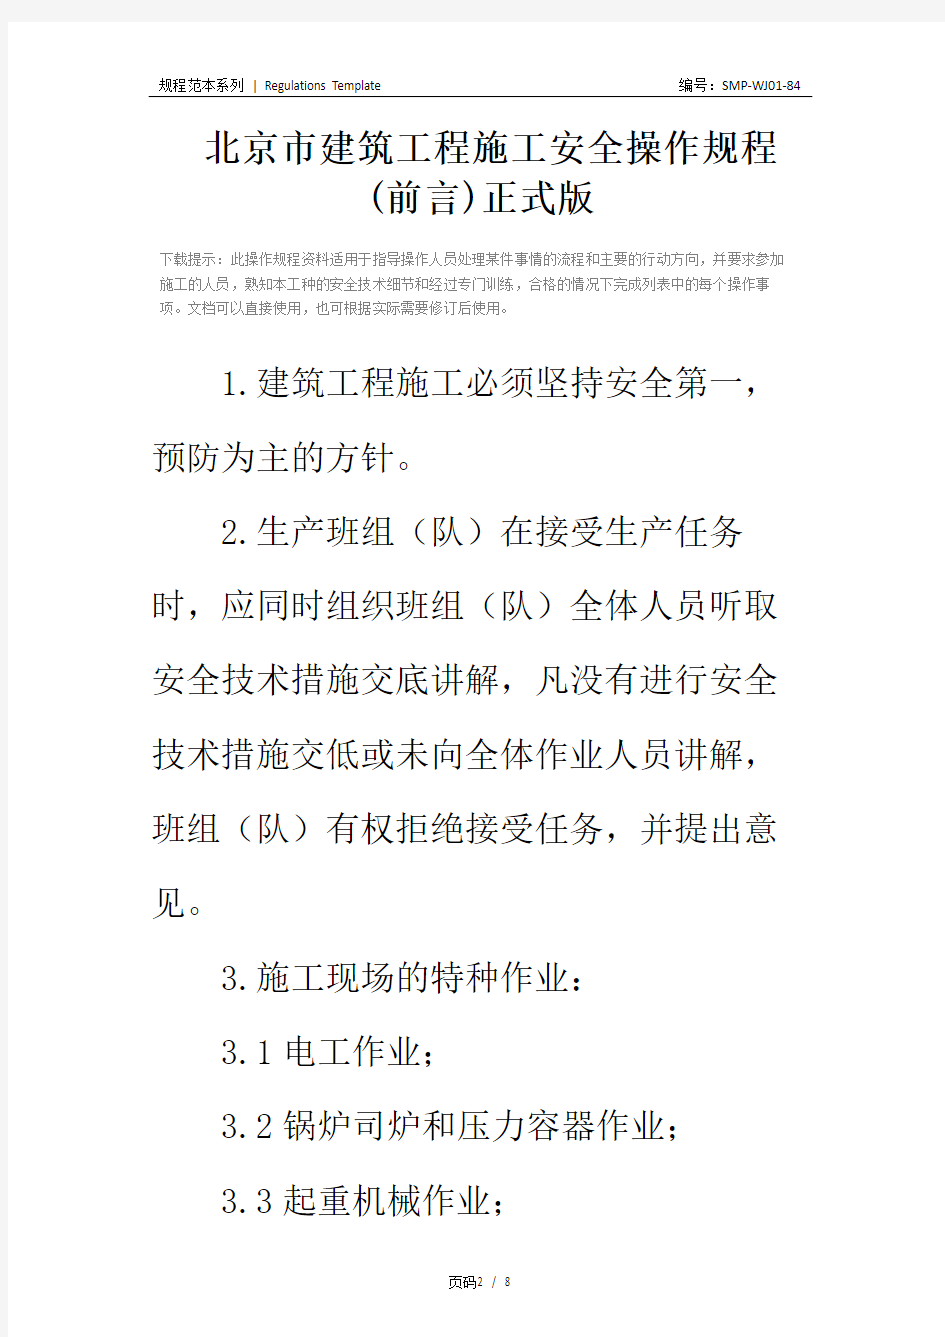 北京市建筑工程施工安全操作规程 (前言)正式版